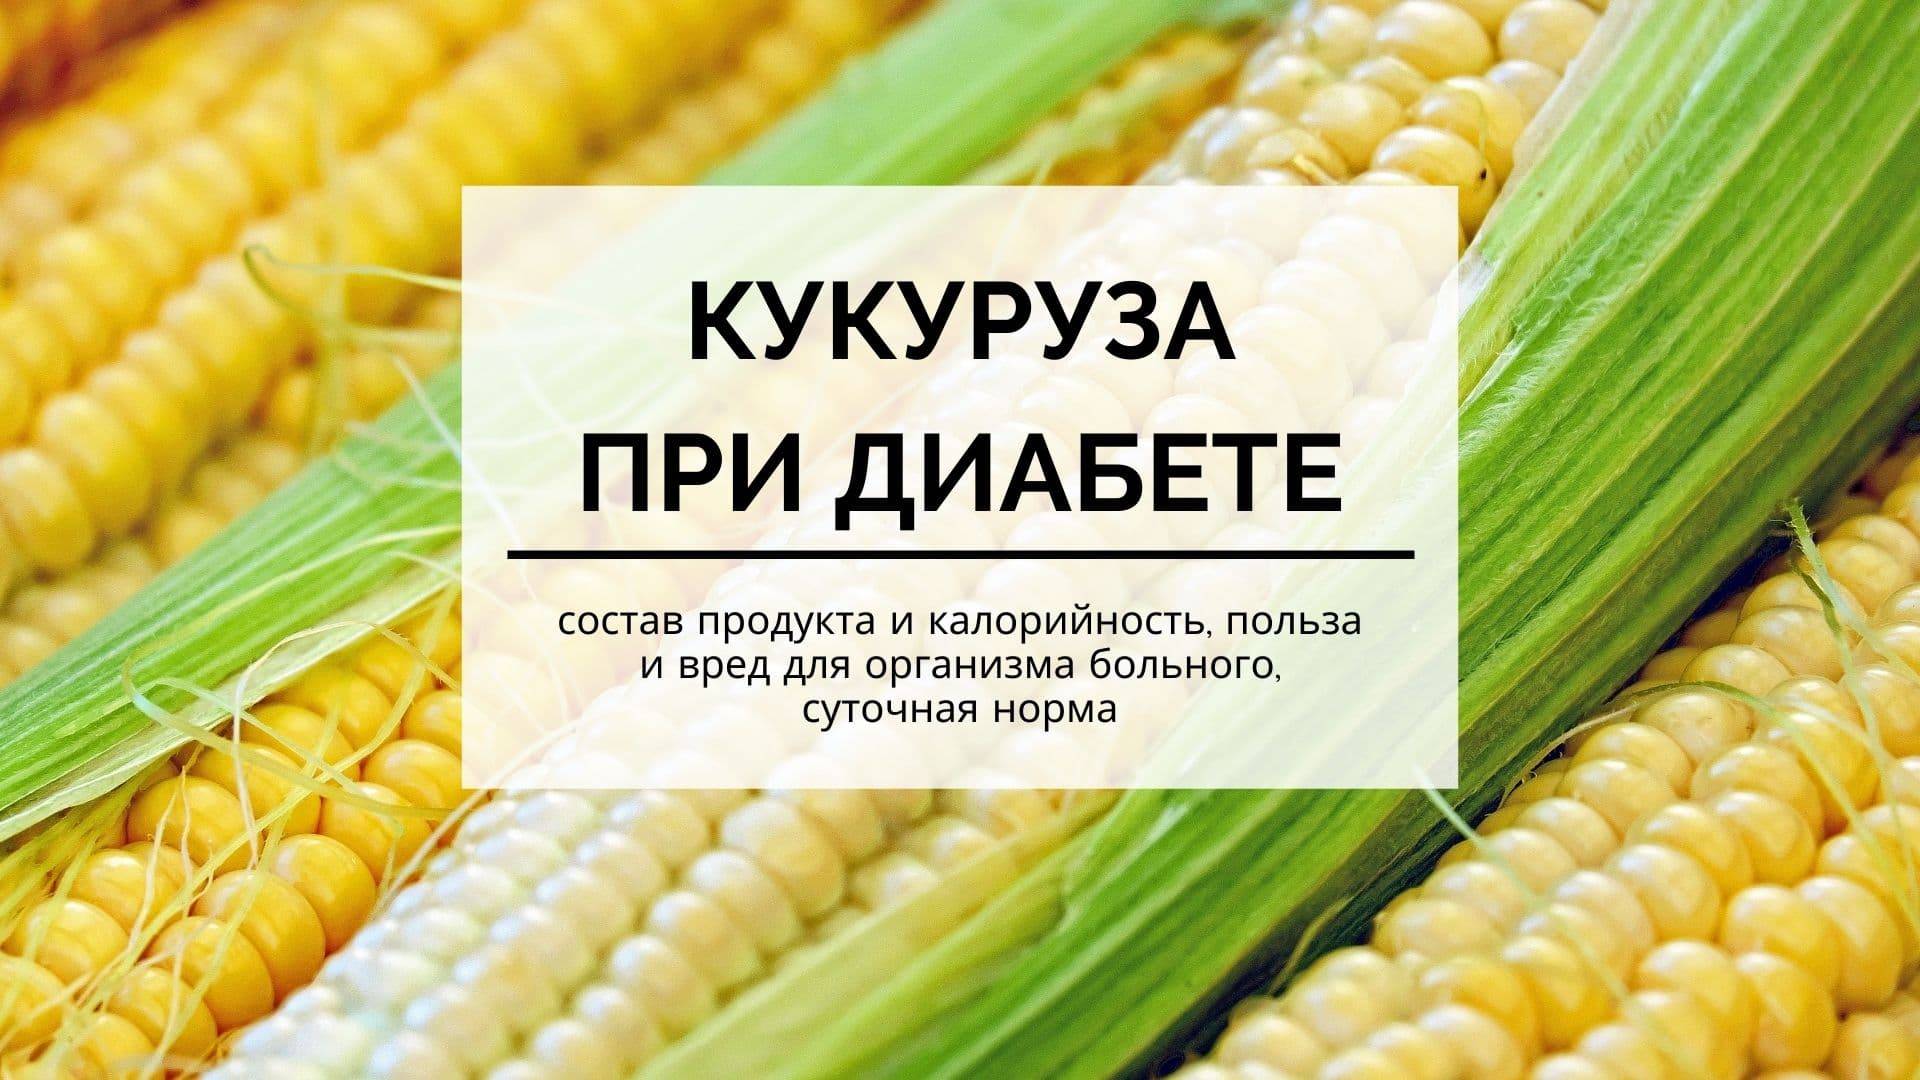 Калорийность кукурузы и особенности её состава: витамины, минералы и полезные свойства царицы полей